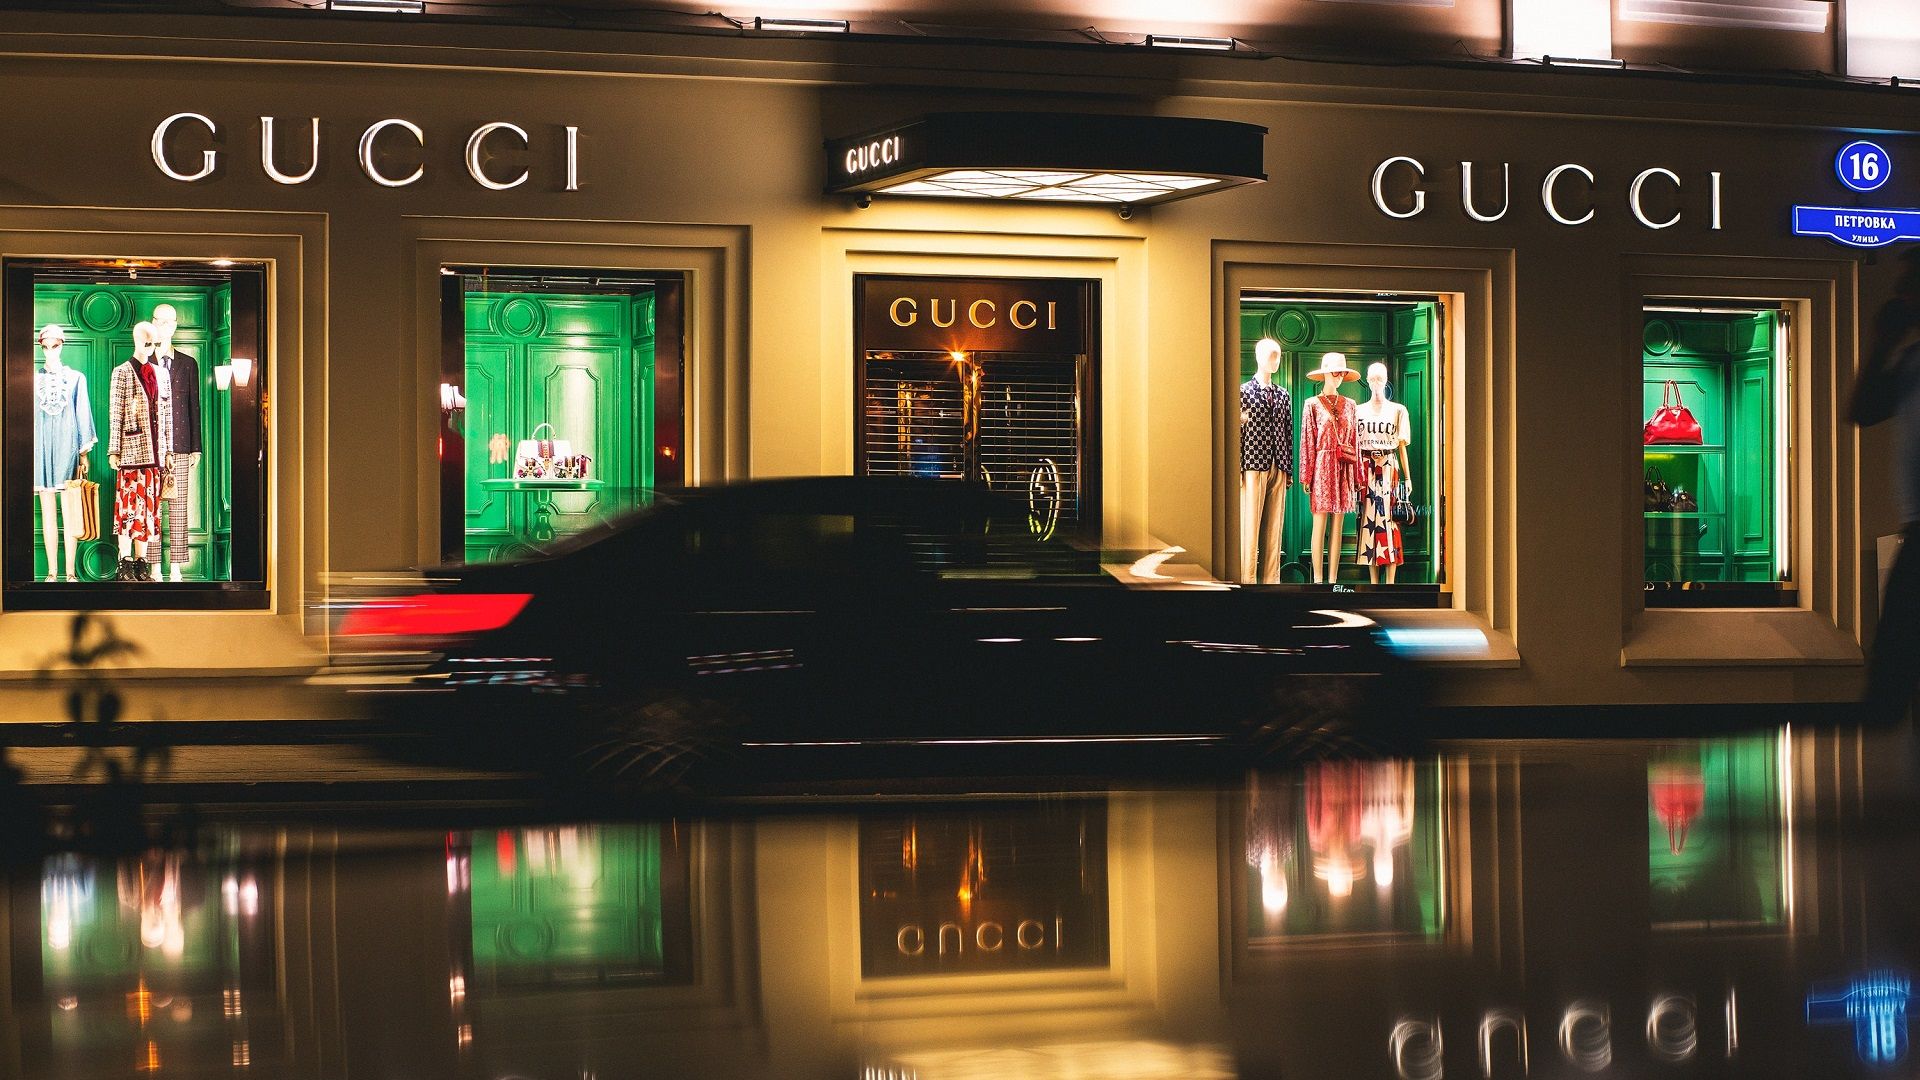 Lịch sử Gucci: Hãy cùng đón xem những khoảnh khắc đáng nhớ trong lịch sử của thương hiệu thời trang nổi tiếng Gucci. Từ những bước đầu tiên cho đến cách mà họ định hình thế giới thời trang hiện đại ngày nay, bạn sẽ được khám phá một câu chuyện đầy cảm hứng. 